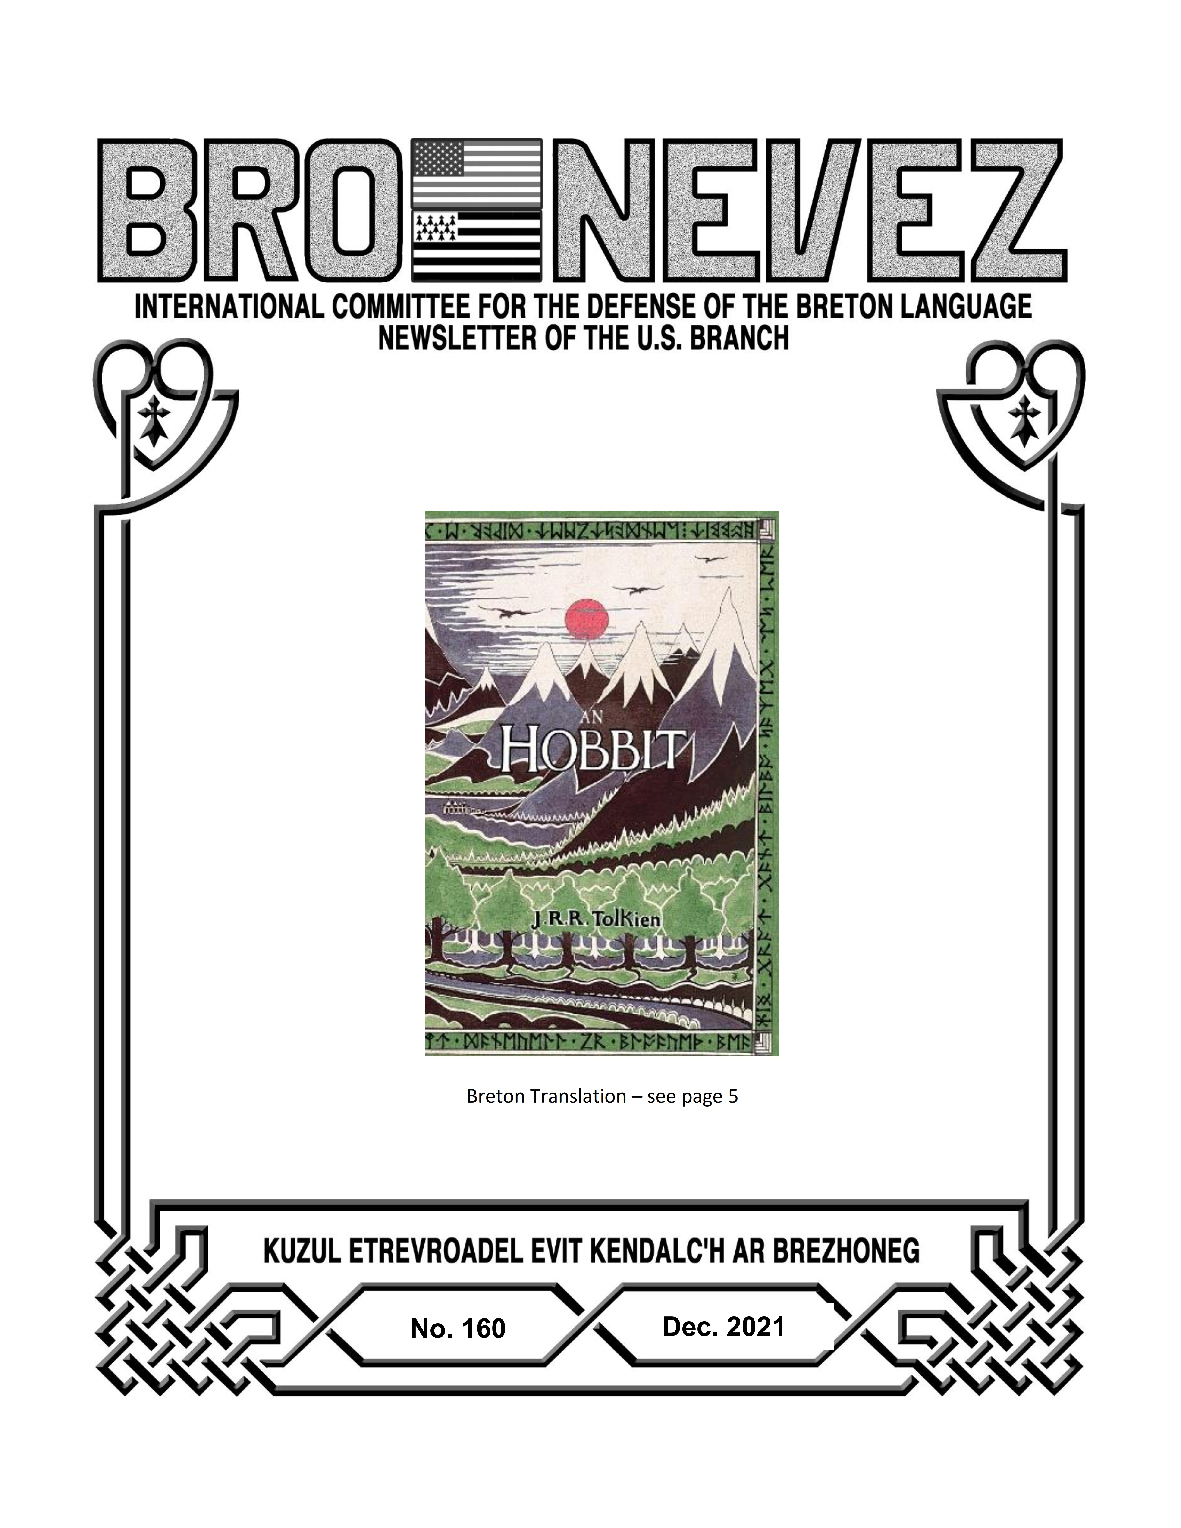 Bro Nevez (revue des bretons des USA) de décembre 2021 est disponible en ligne